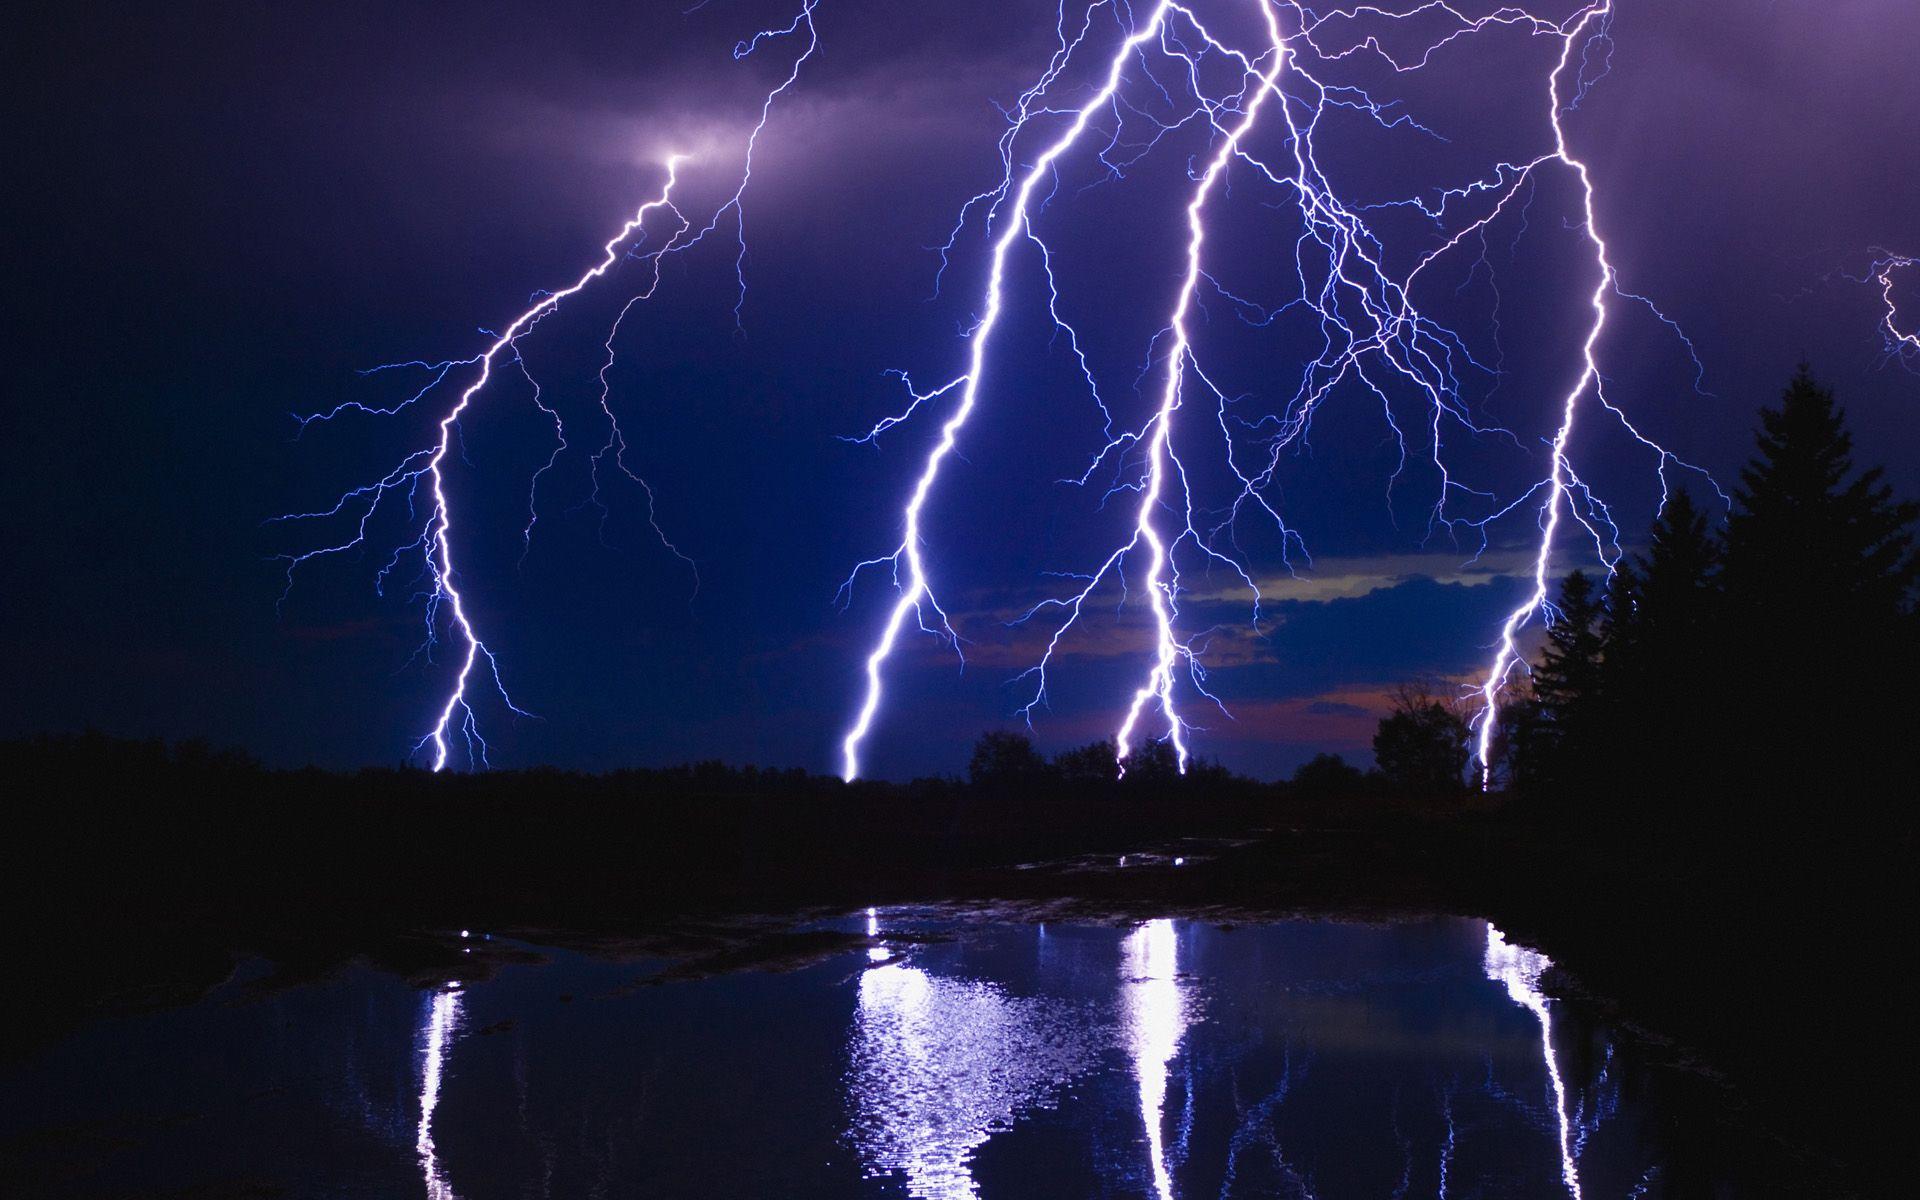 Four lightning strikes in dark blue sky